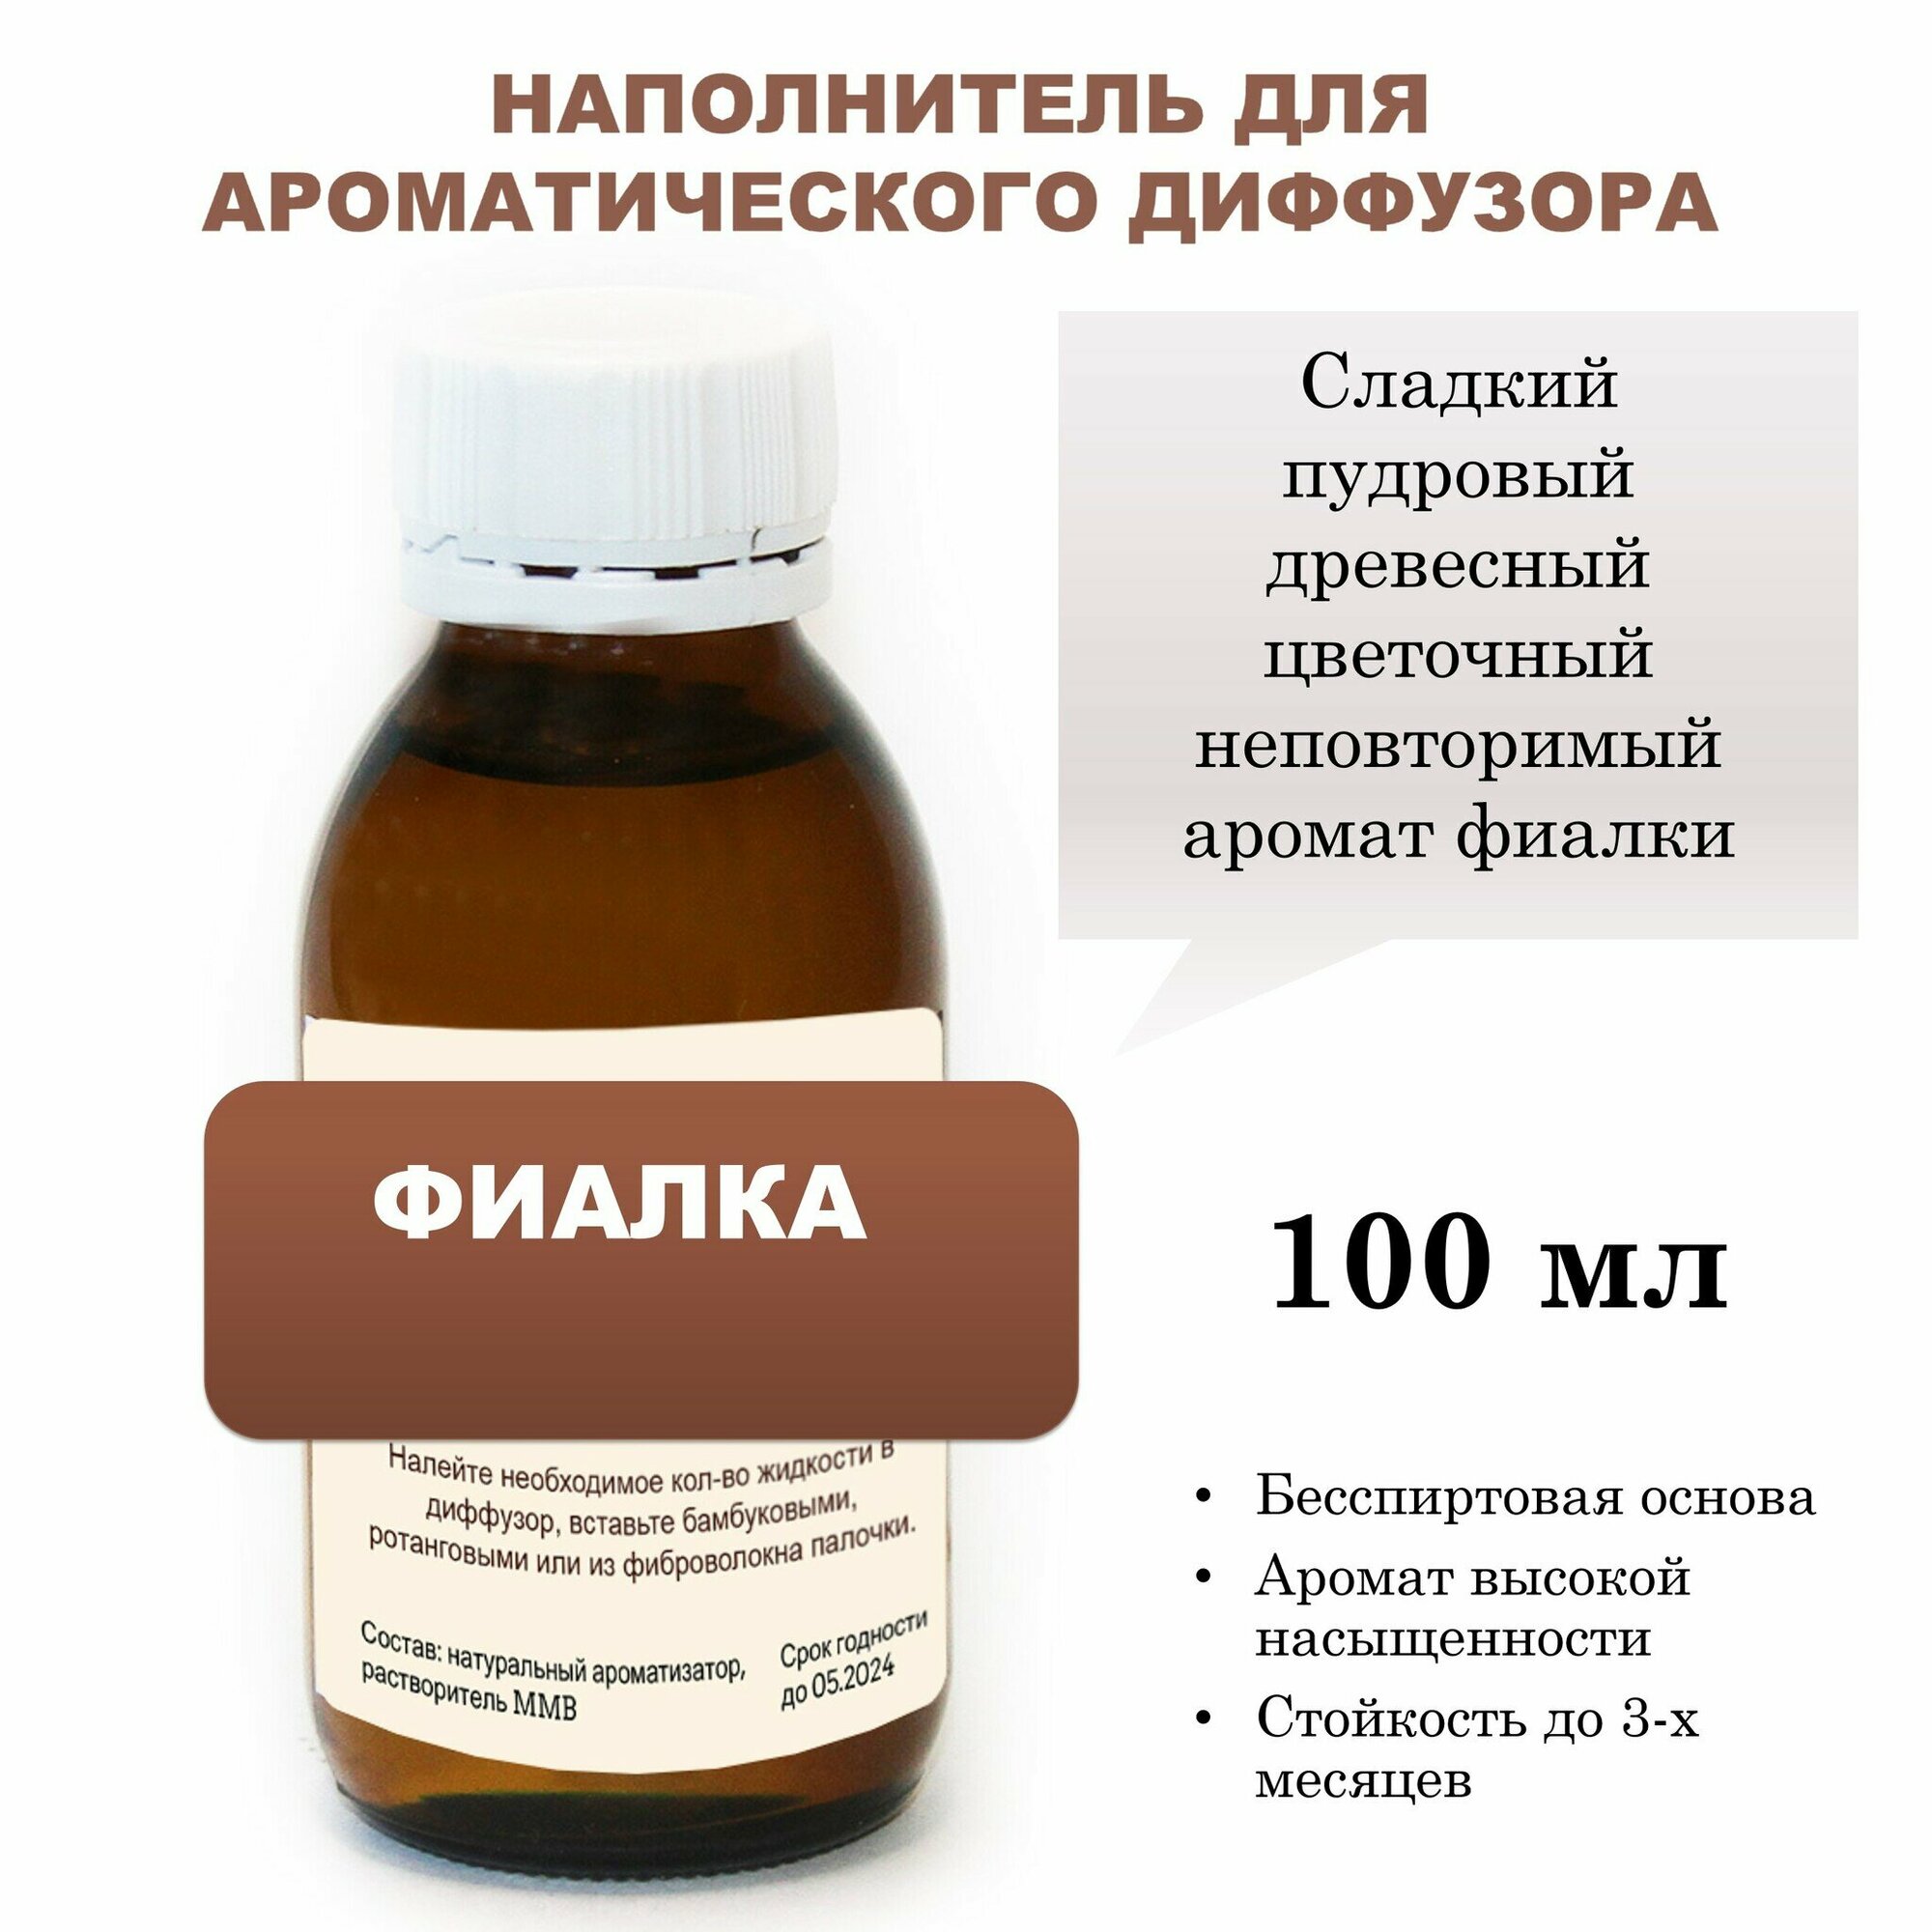 Фиалка - Наполнитель для ароматического диффузора (100 мл)